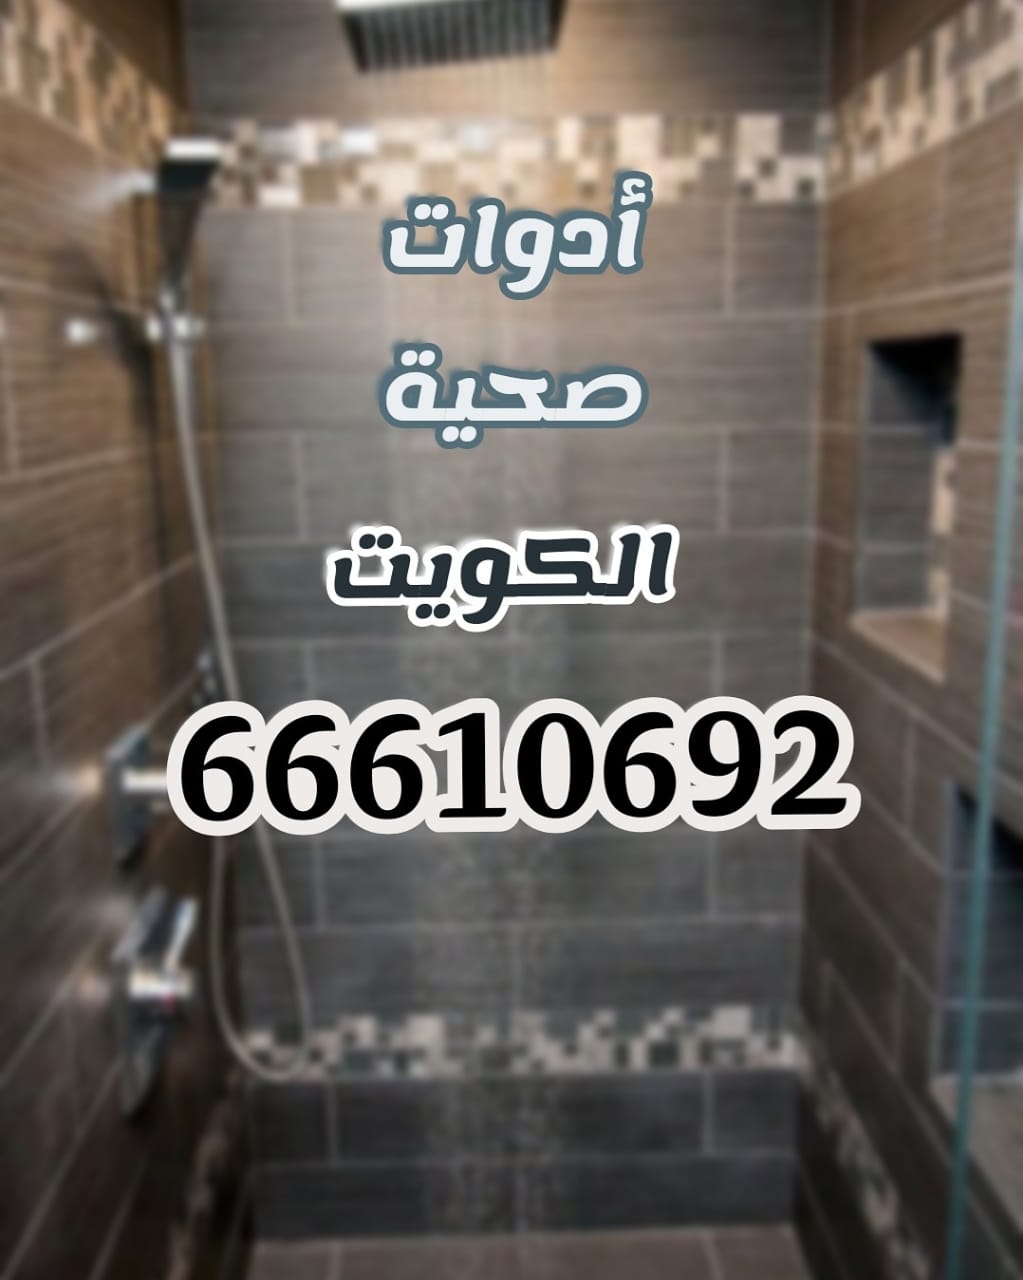 سباك جمعية القيروان / 66610692 / صيانة وتركيب فني صحي بالعاصمة